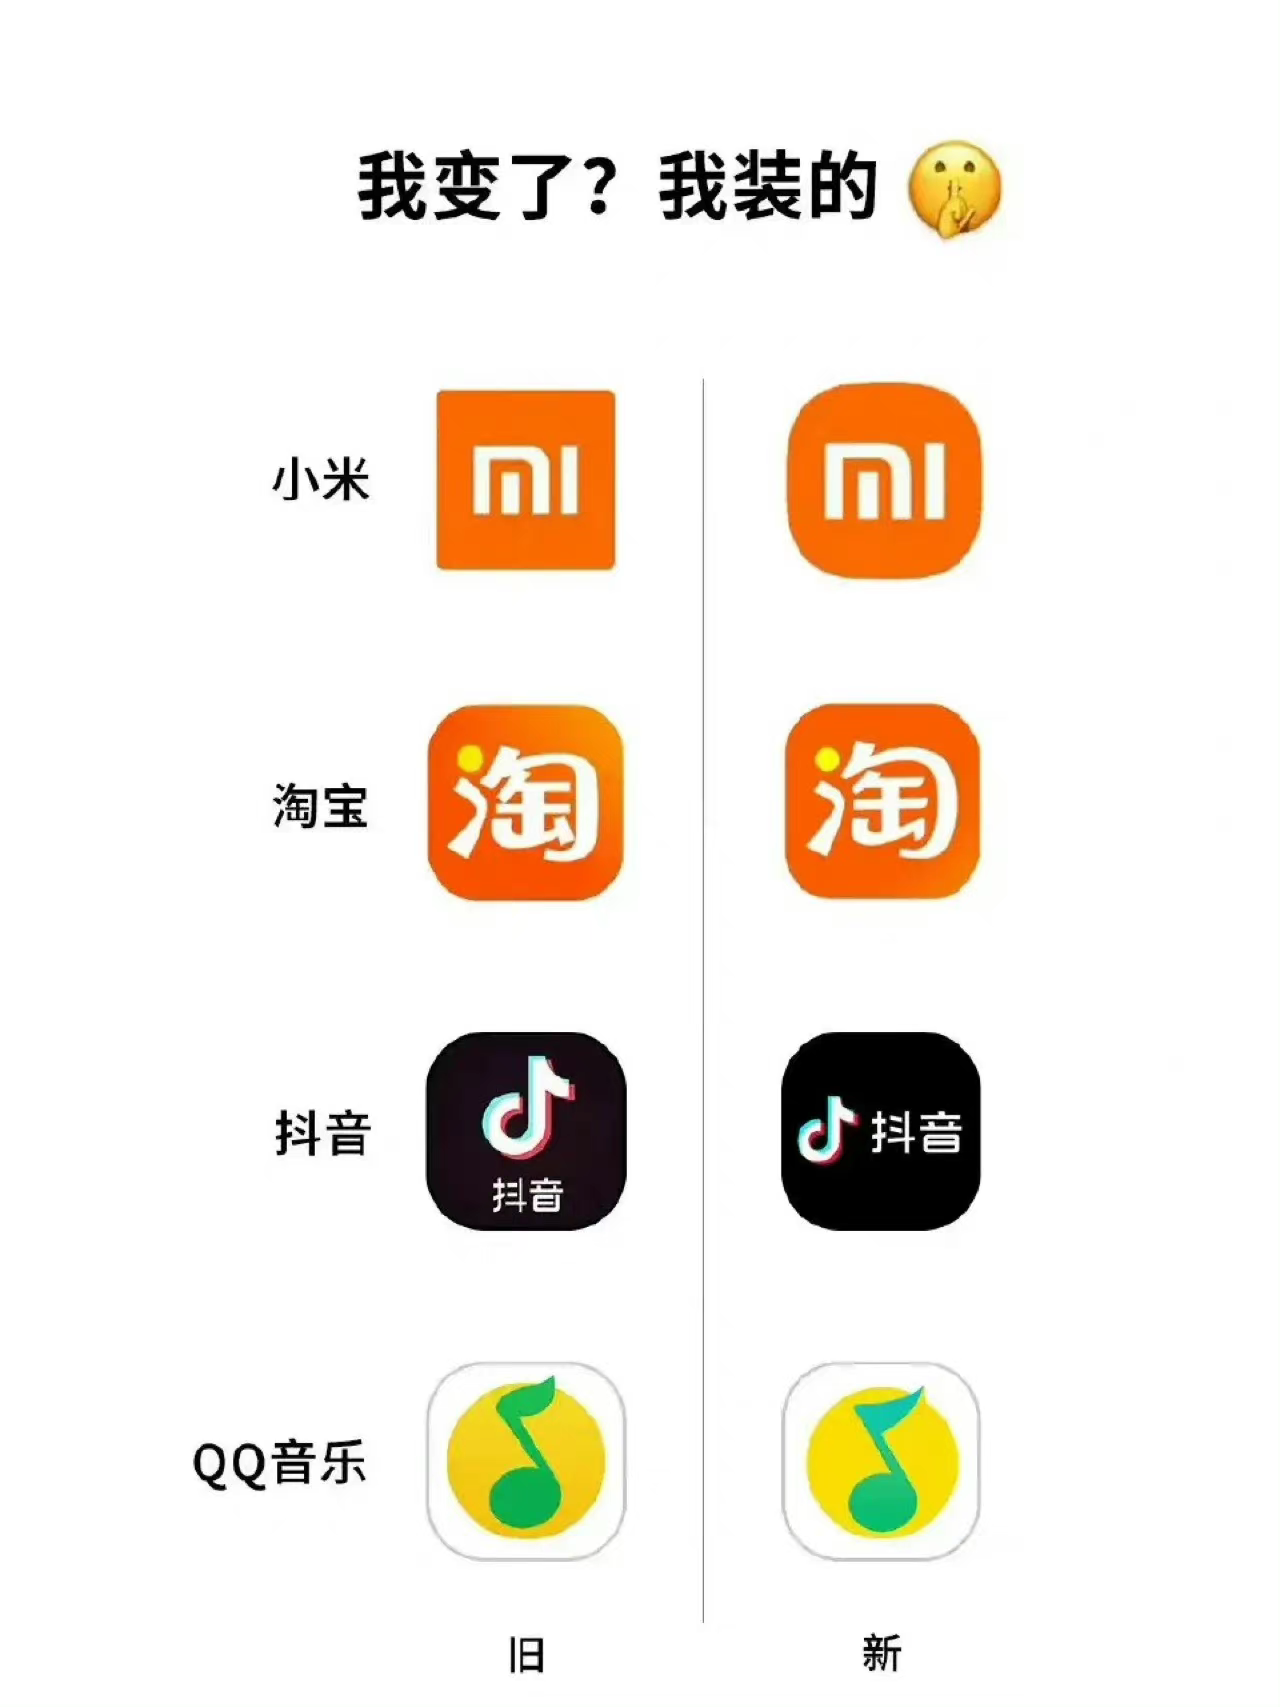 盘点一下小米华为美团淘宝京东qq音乐等各大公司品牌logo的演变哪家